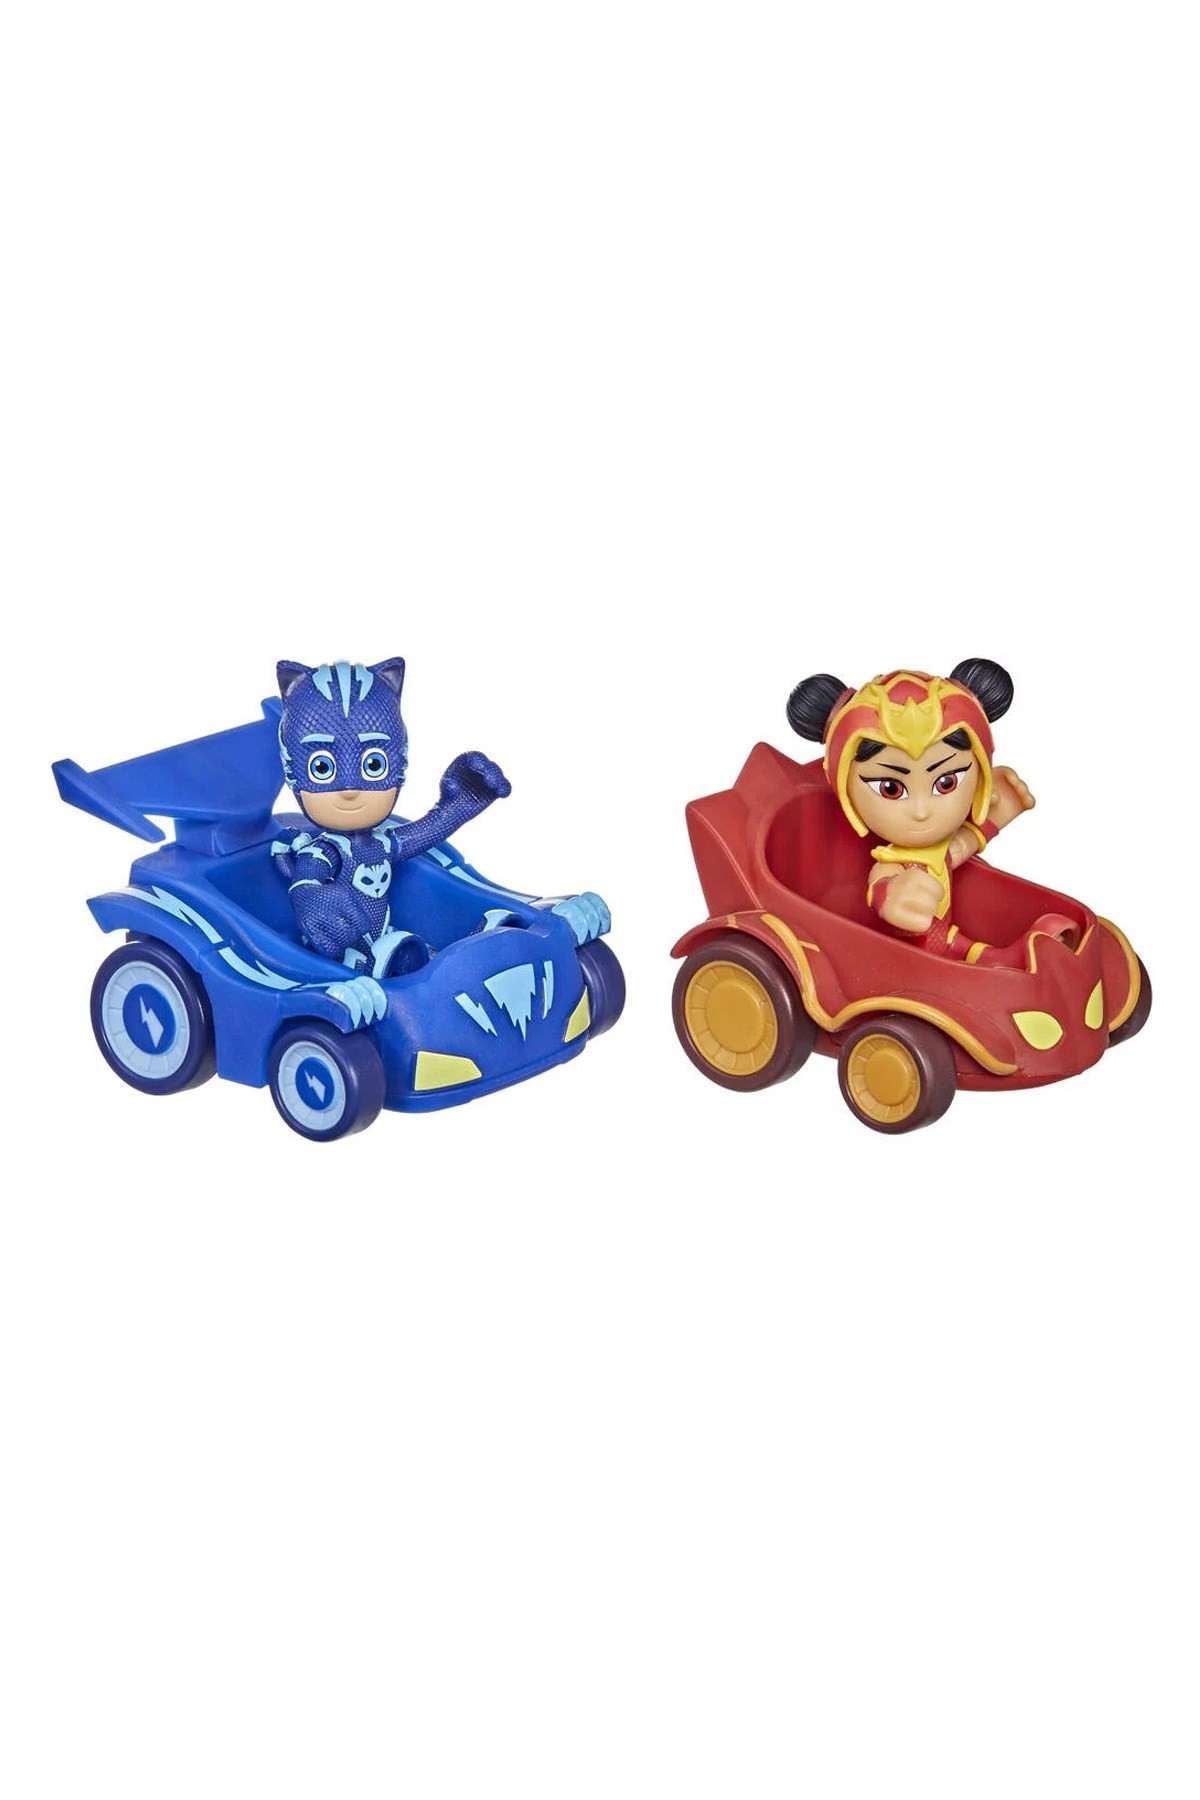 PJ Maskeliler 2'li Figür ve Araç Seti Mavi/Kırmızı